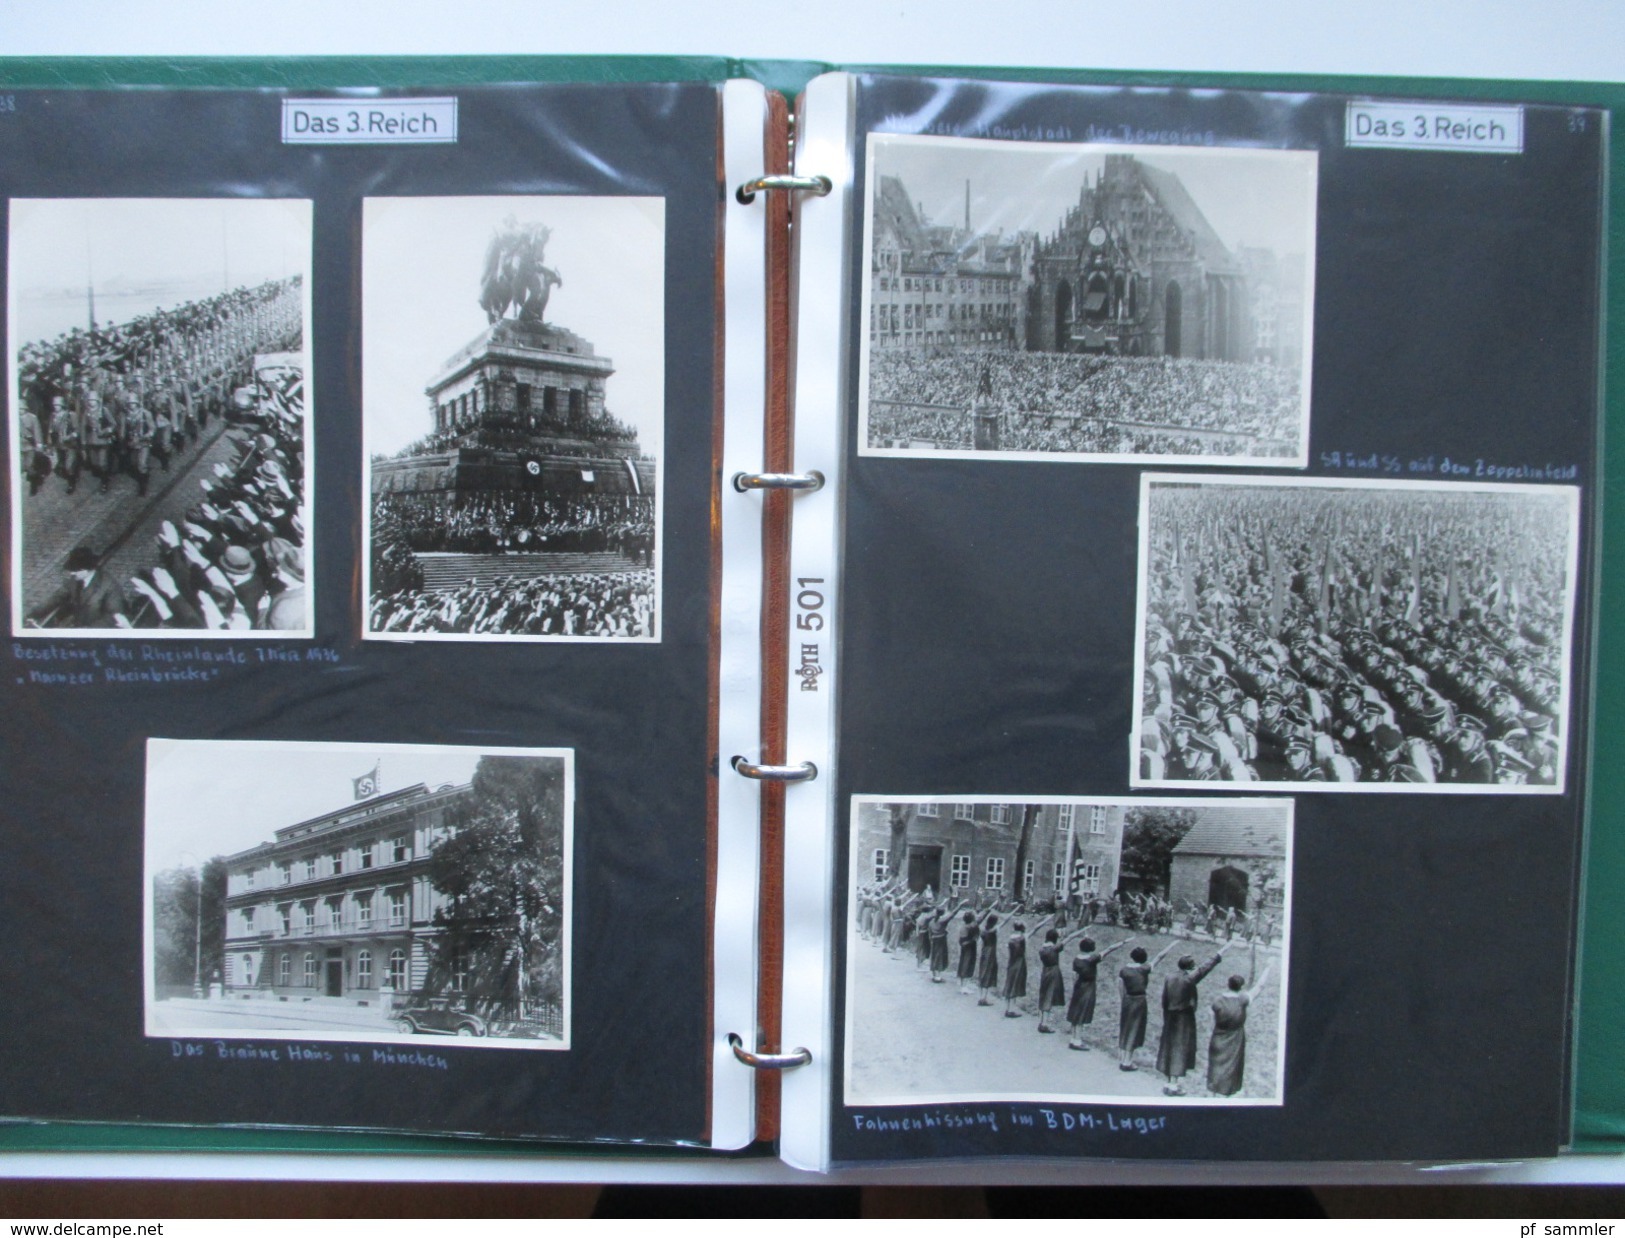 Drittes Reich / Hitler / Göbbels / SA / Miltär / Paraden usw... 2 Ordner mit 230 Fotos / REPROS aus dem Jahre 1965